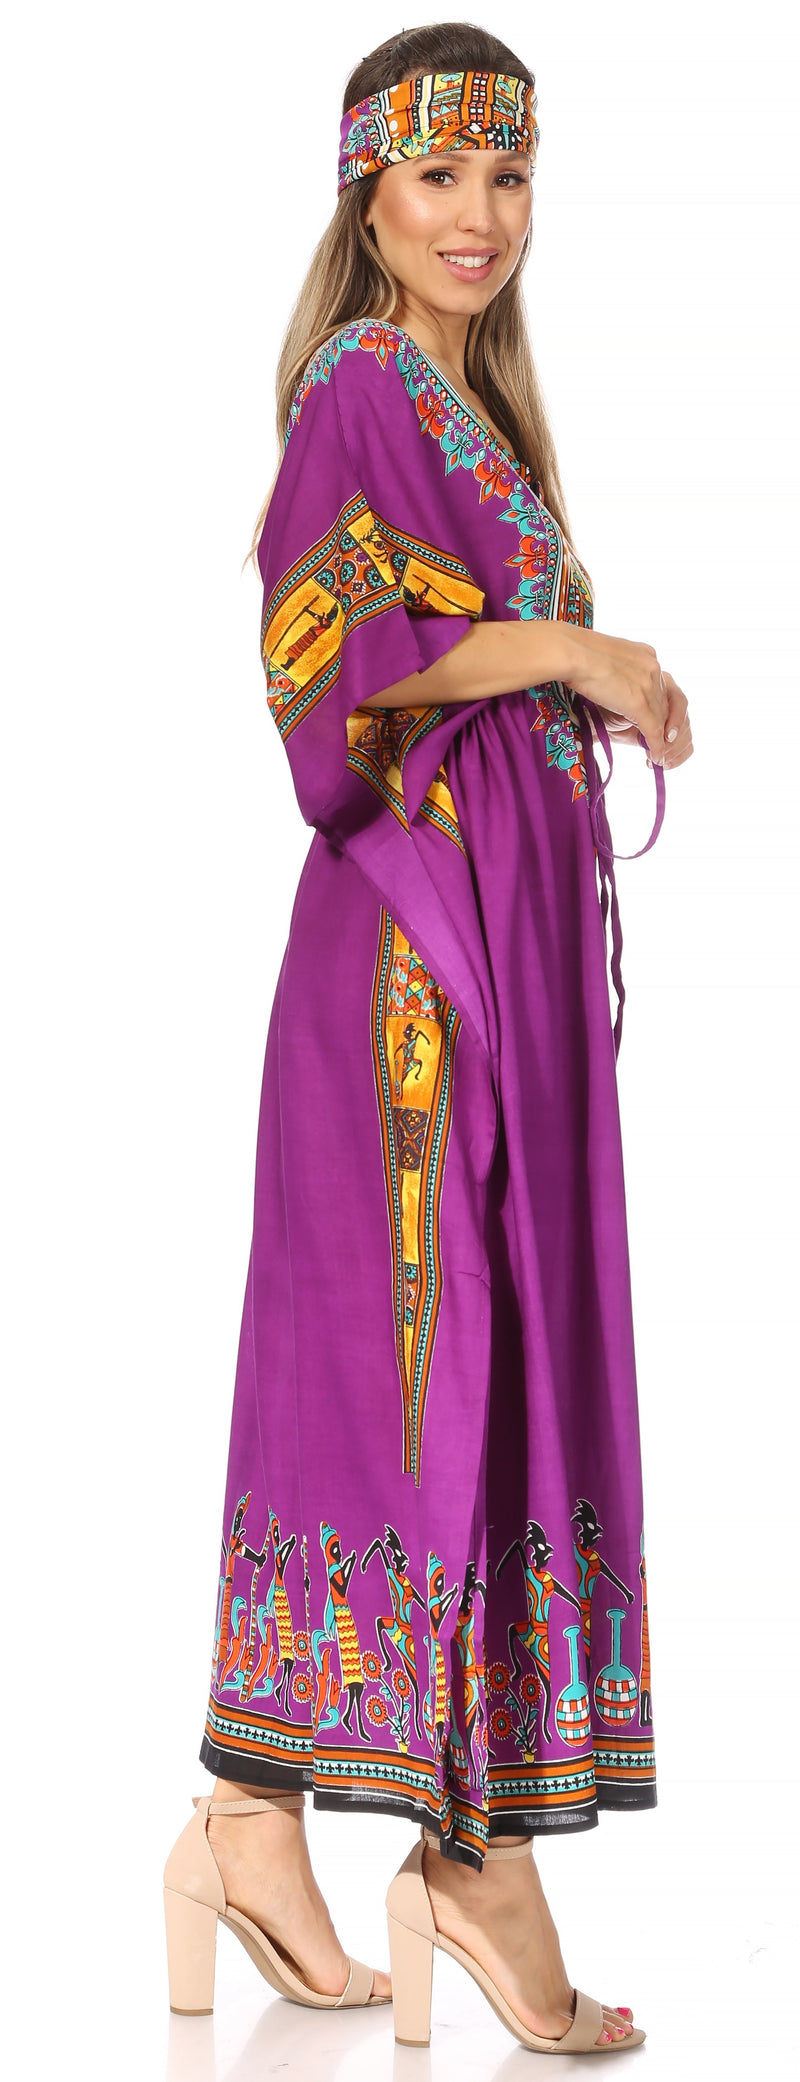 Sakkas Mera Women's Long Loose Short Sleeve Summer Casual Caftan Kaftan Dress